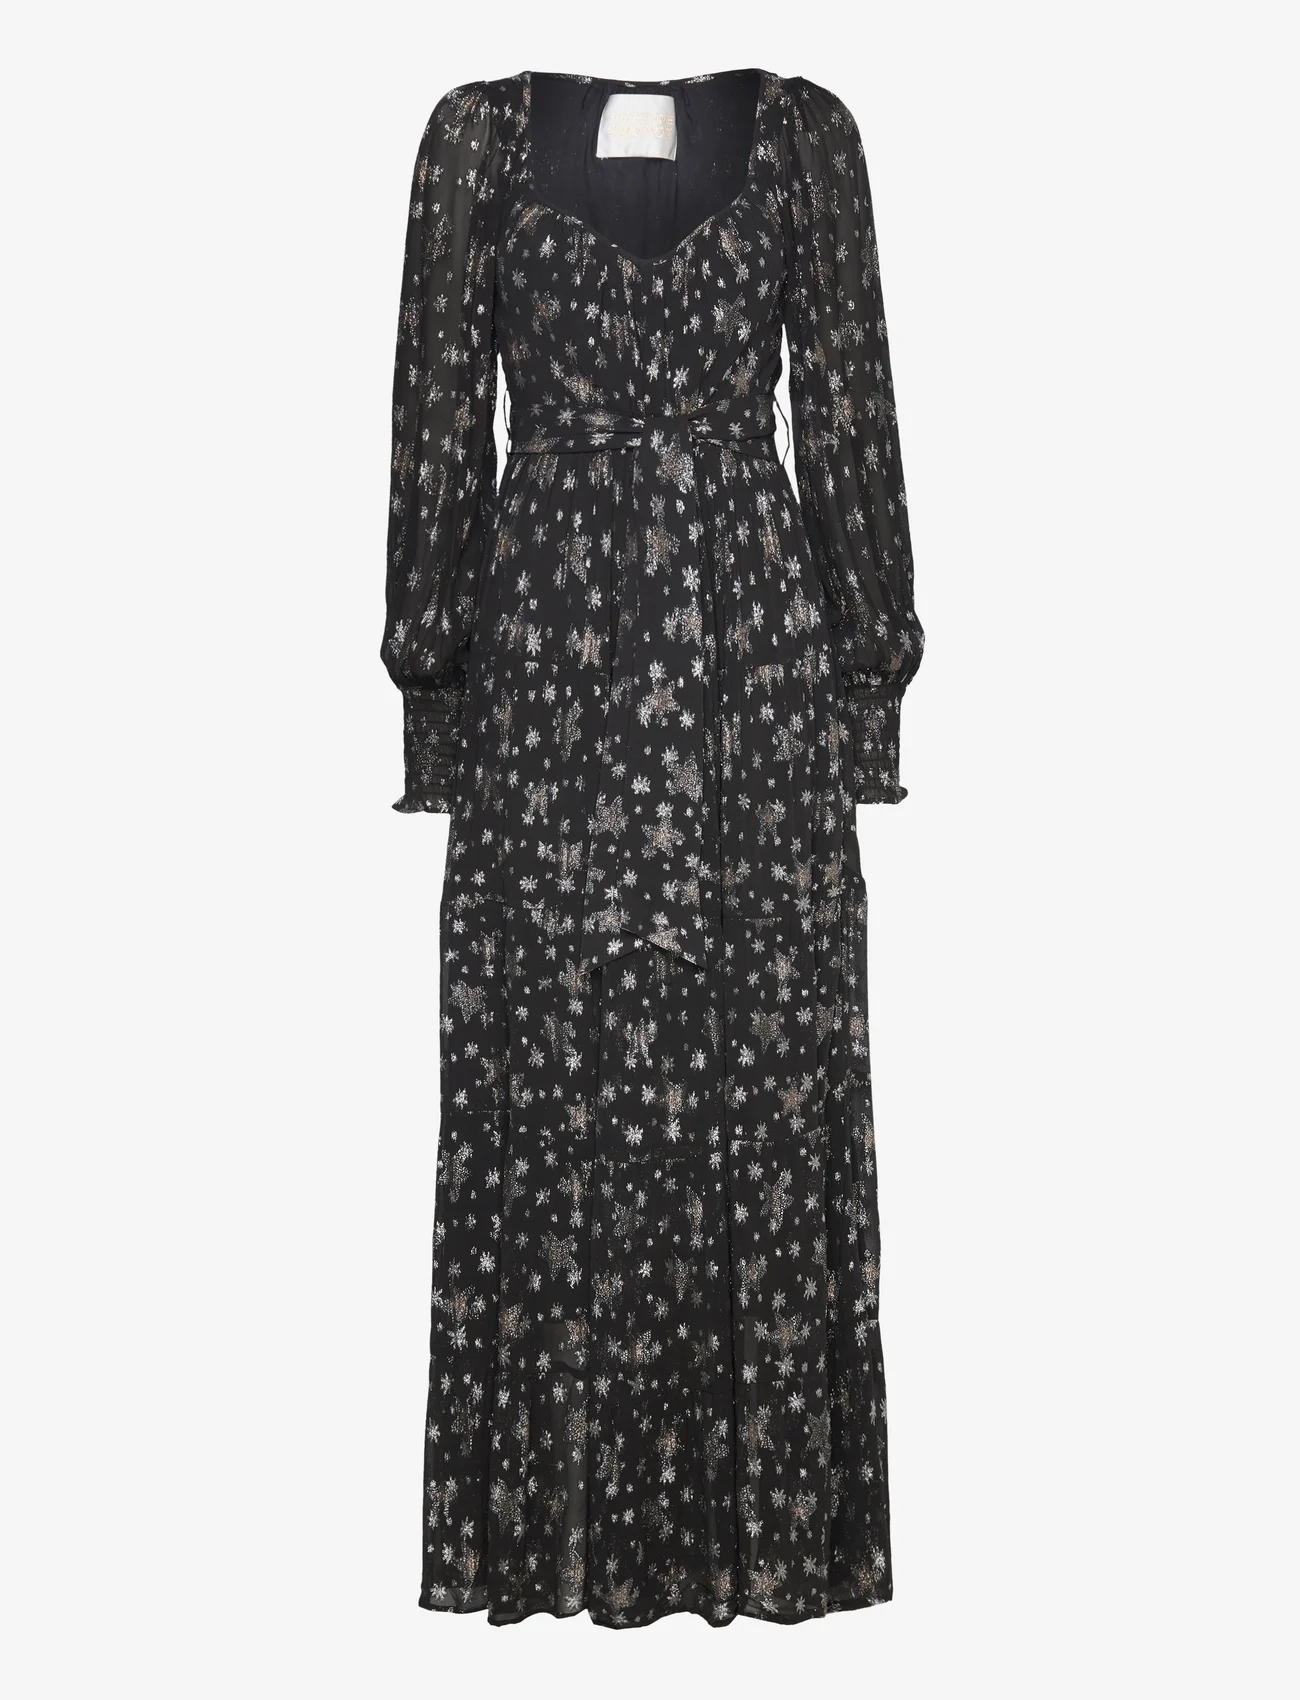 Fabienne Chapot - Folie Dress - festtøj til outletpriser - black/silver - 0